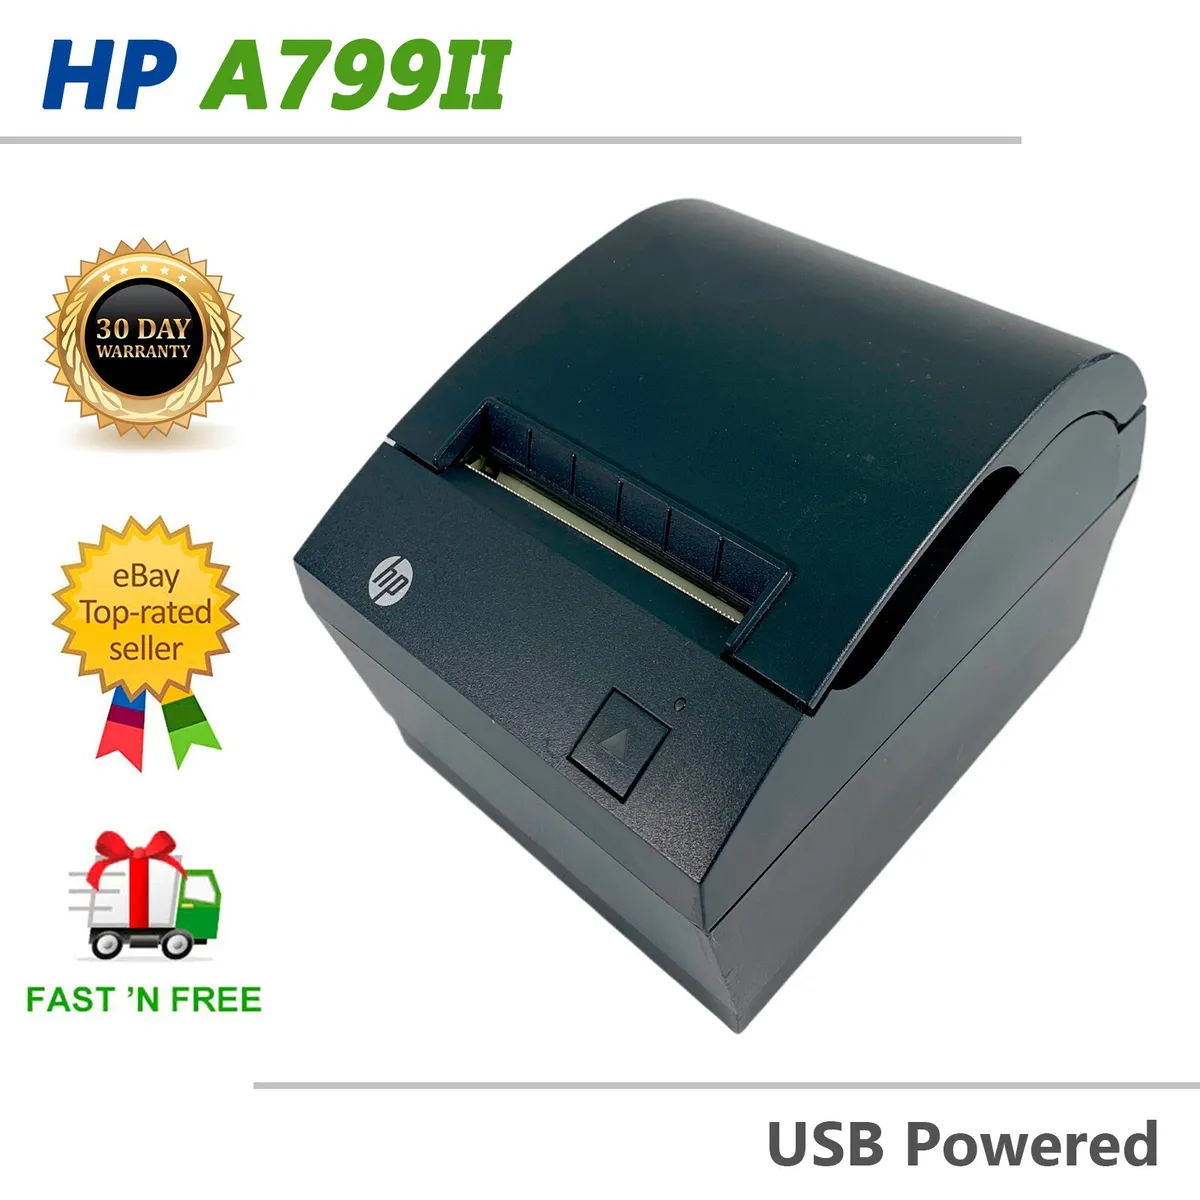 Value Serial USB Receipt Printer